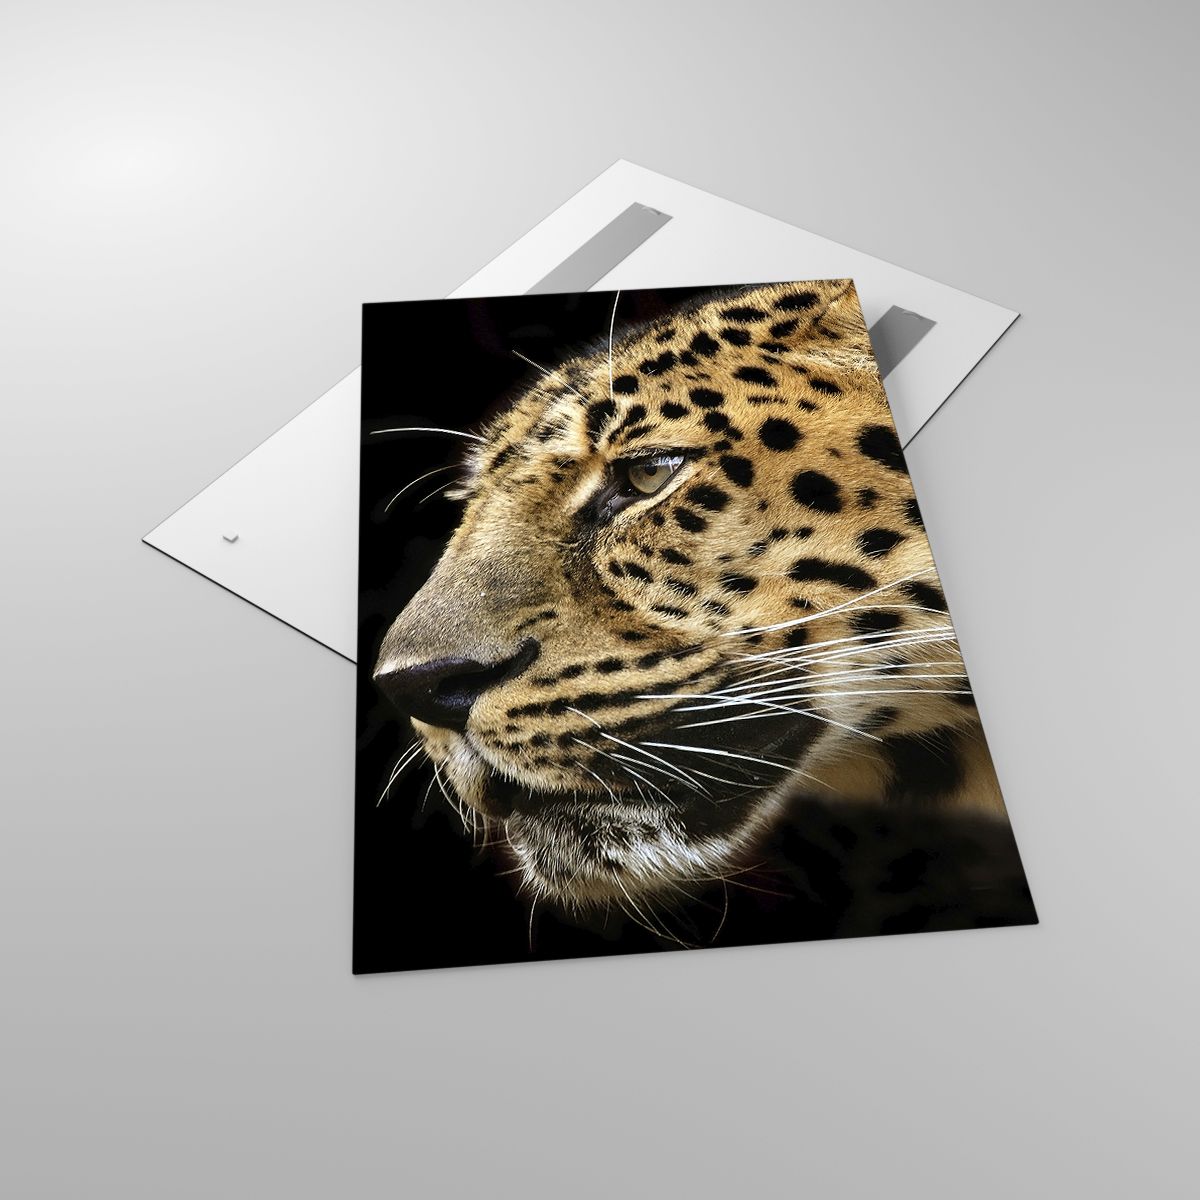 Glasbild Tiere, Glasbild Leopard, Glasbild Afrika, Glasbild Wilde Katze, Glasbild Natur